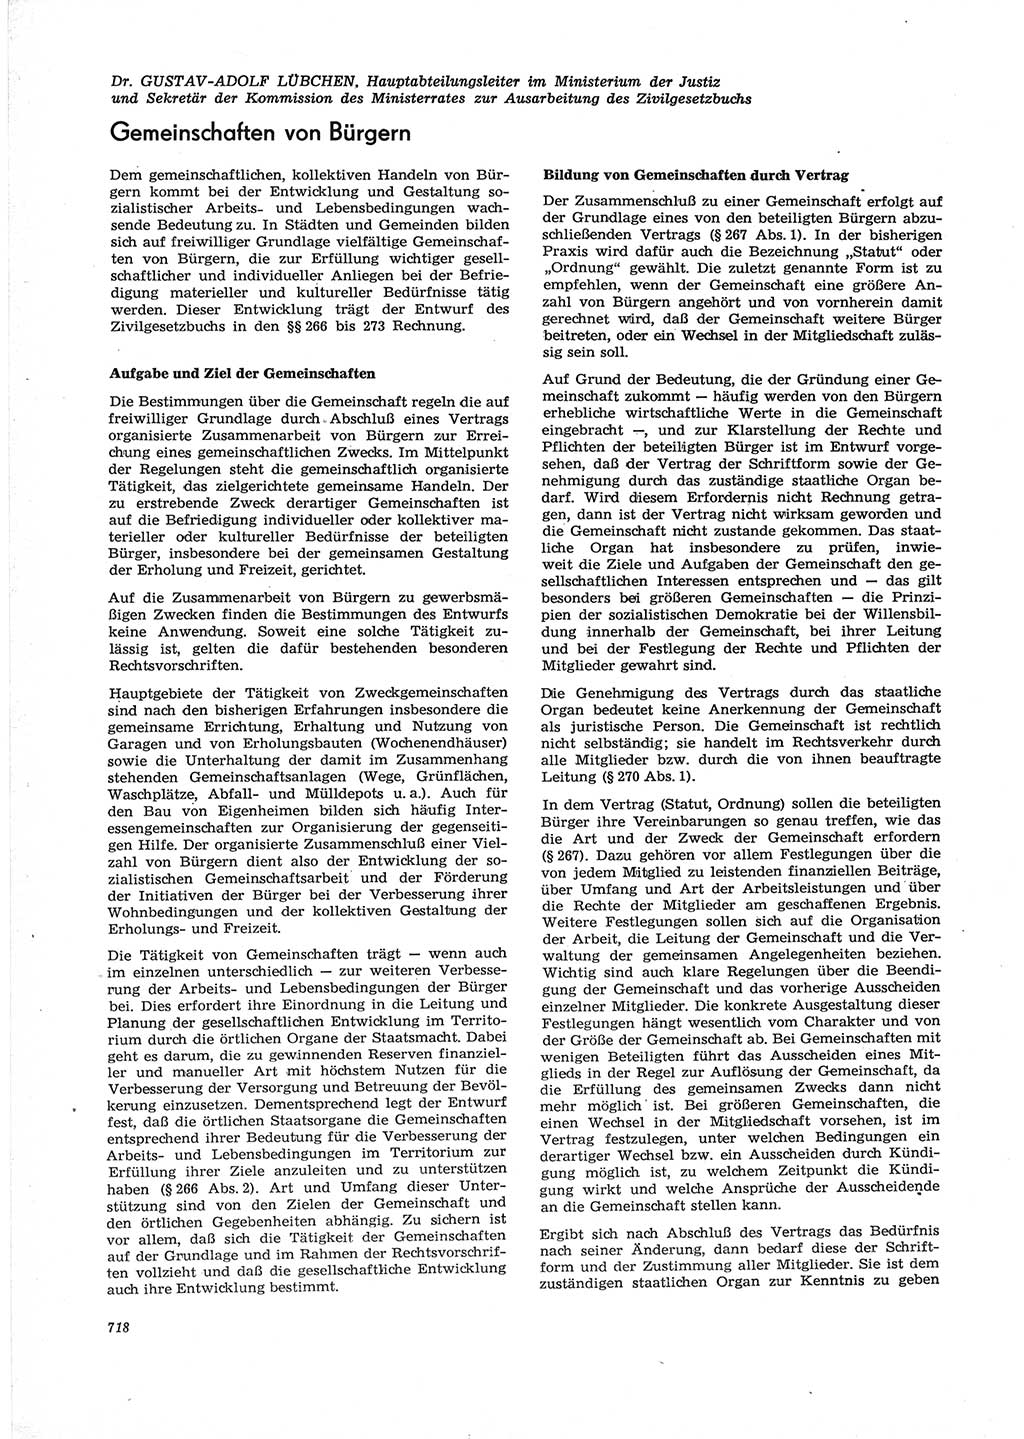 Neue Justiz (NJ), Zeitschrift für Recht und Rechtswissenschaft [Deutsche Demokratische Republik (DDR)], 28. Jahrgang 1974, Seite 718 (NJ DDR 1974, S. 718)